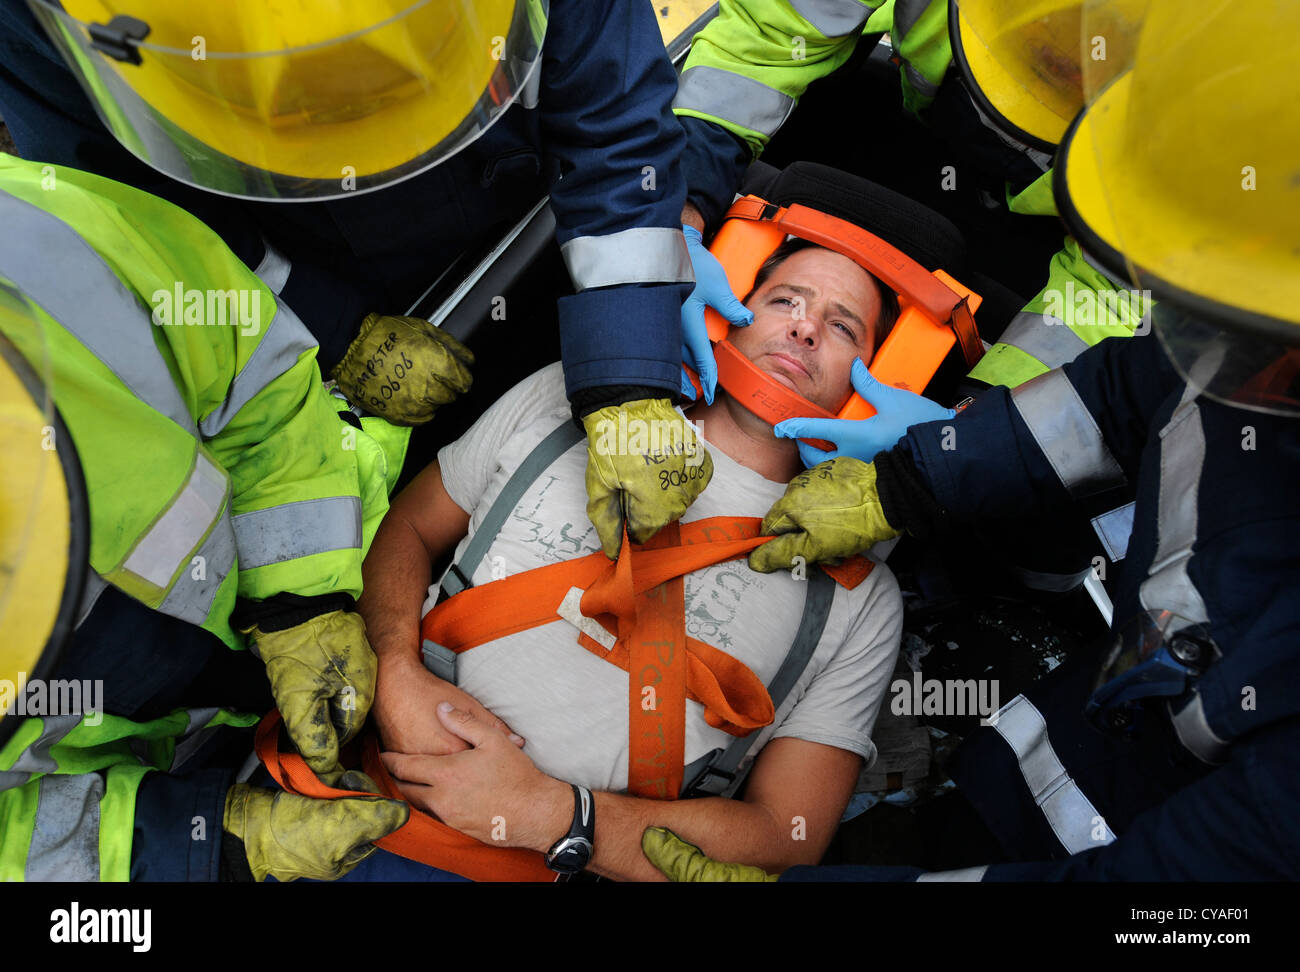 Feuerwehrmann der weißen Uhr in Pontypridd Feuerwache in S Wales - eine Trainingseinheit zu üben, die das Opfer von einer Straße Traf entfernen Stockfoto